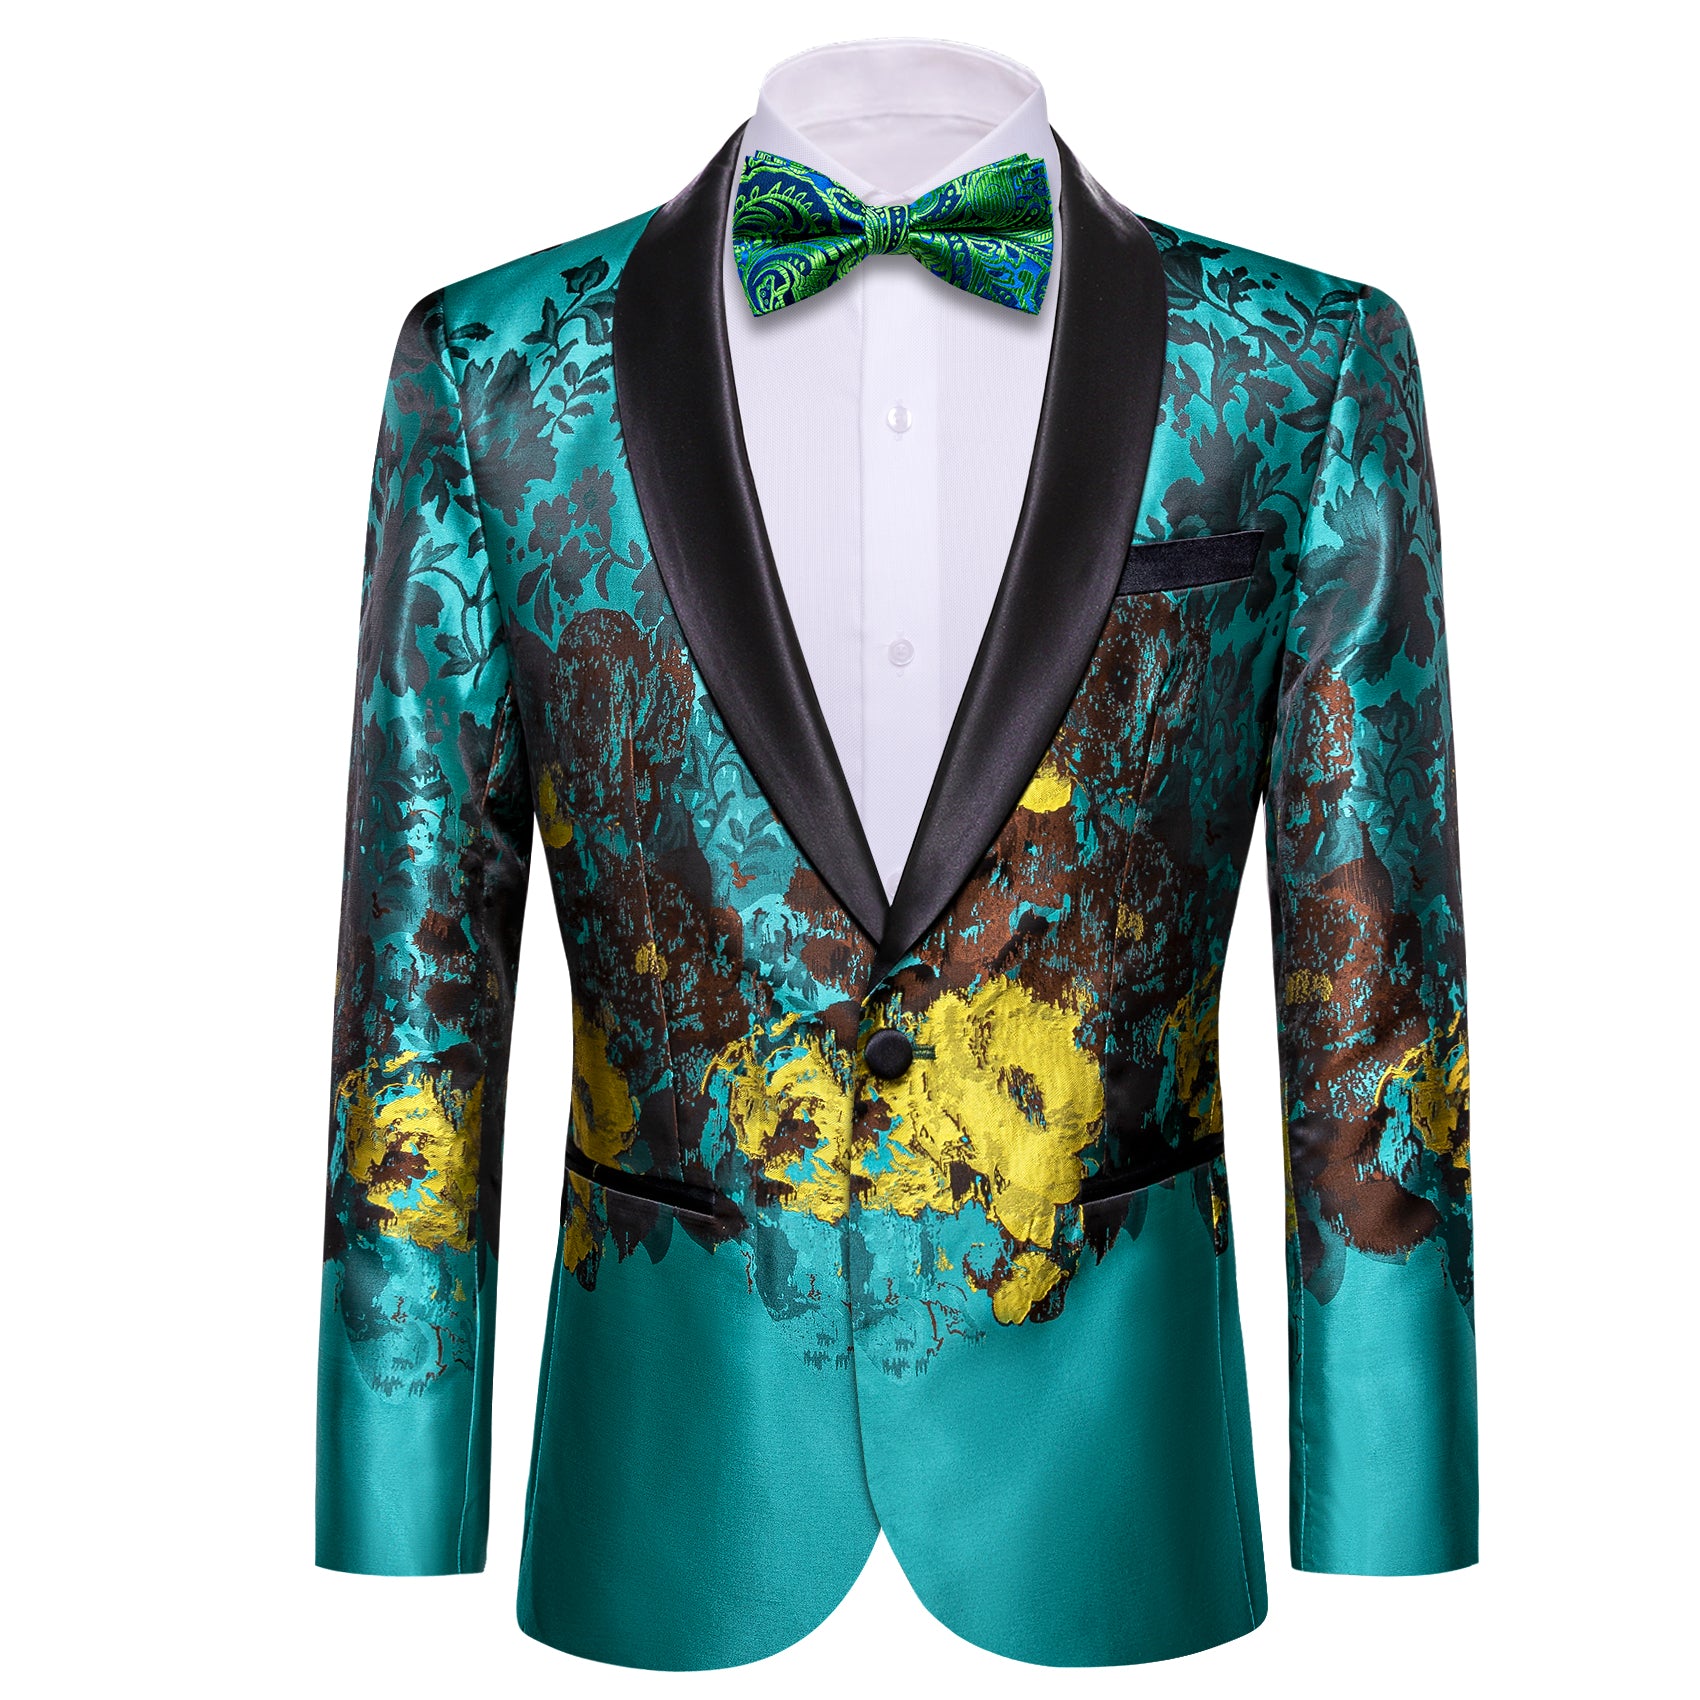 Men's Dress Party Blue Brown Floral Suit Jacket Slim One Button Stylish Blazer